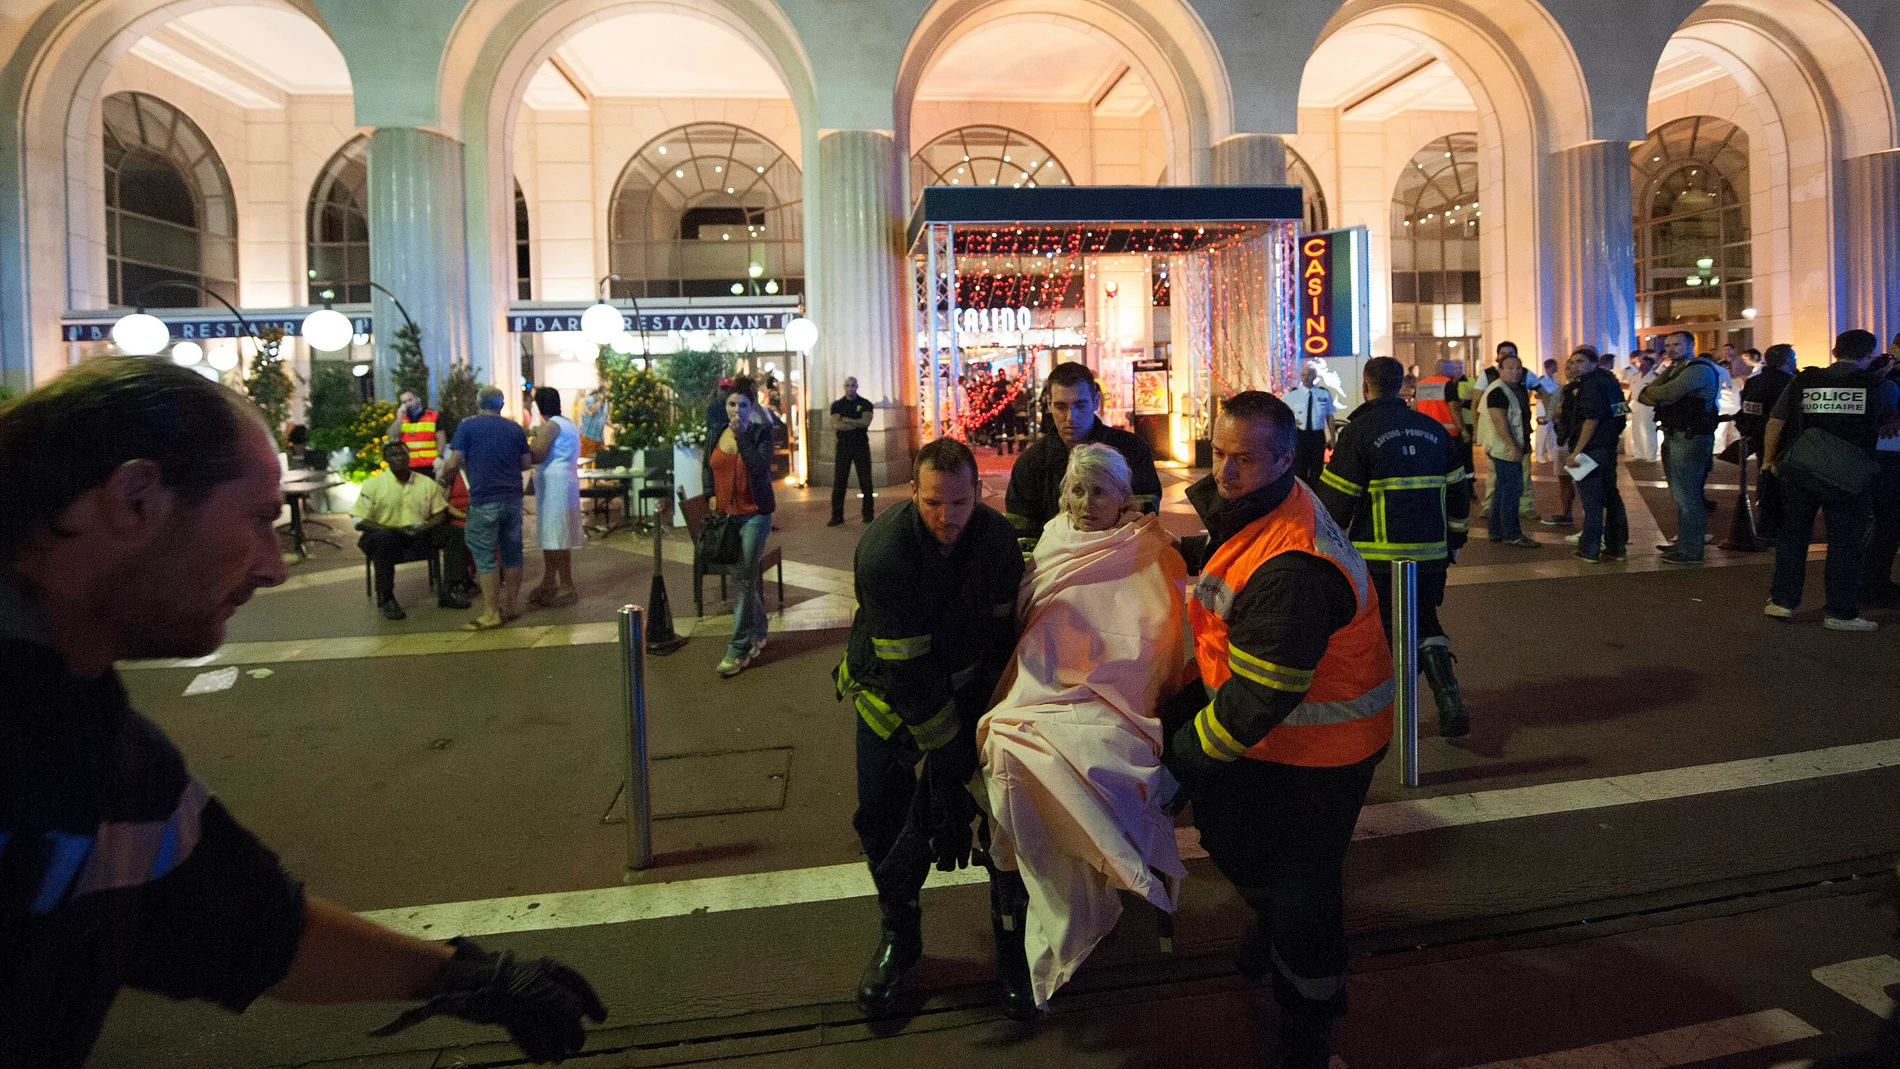 Imágenes del atentado terrorista en Niza